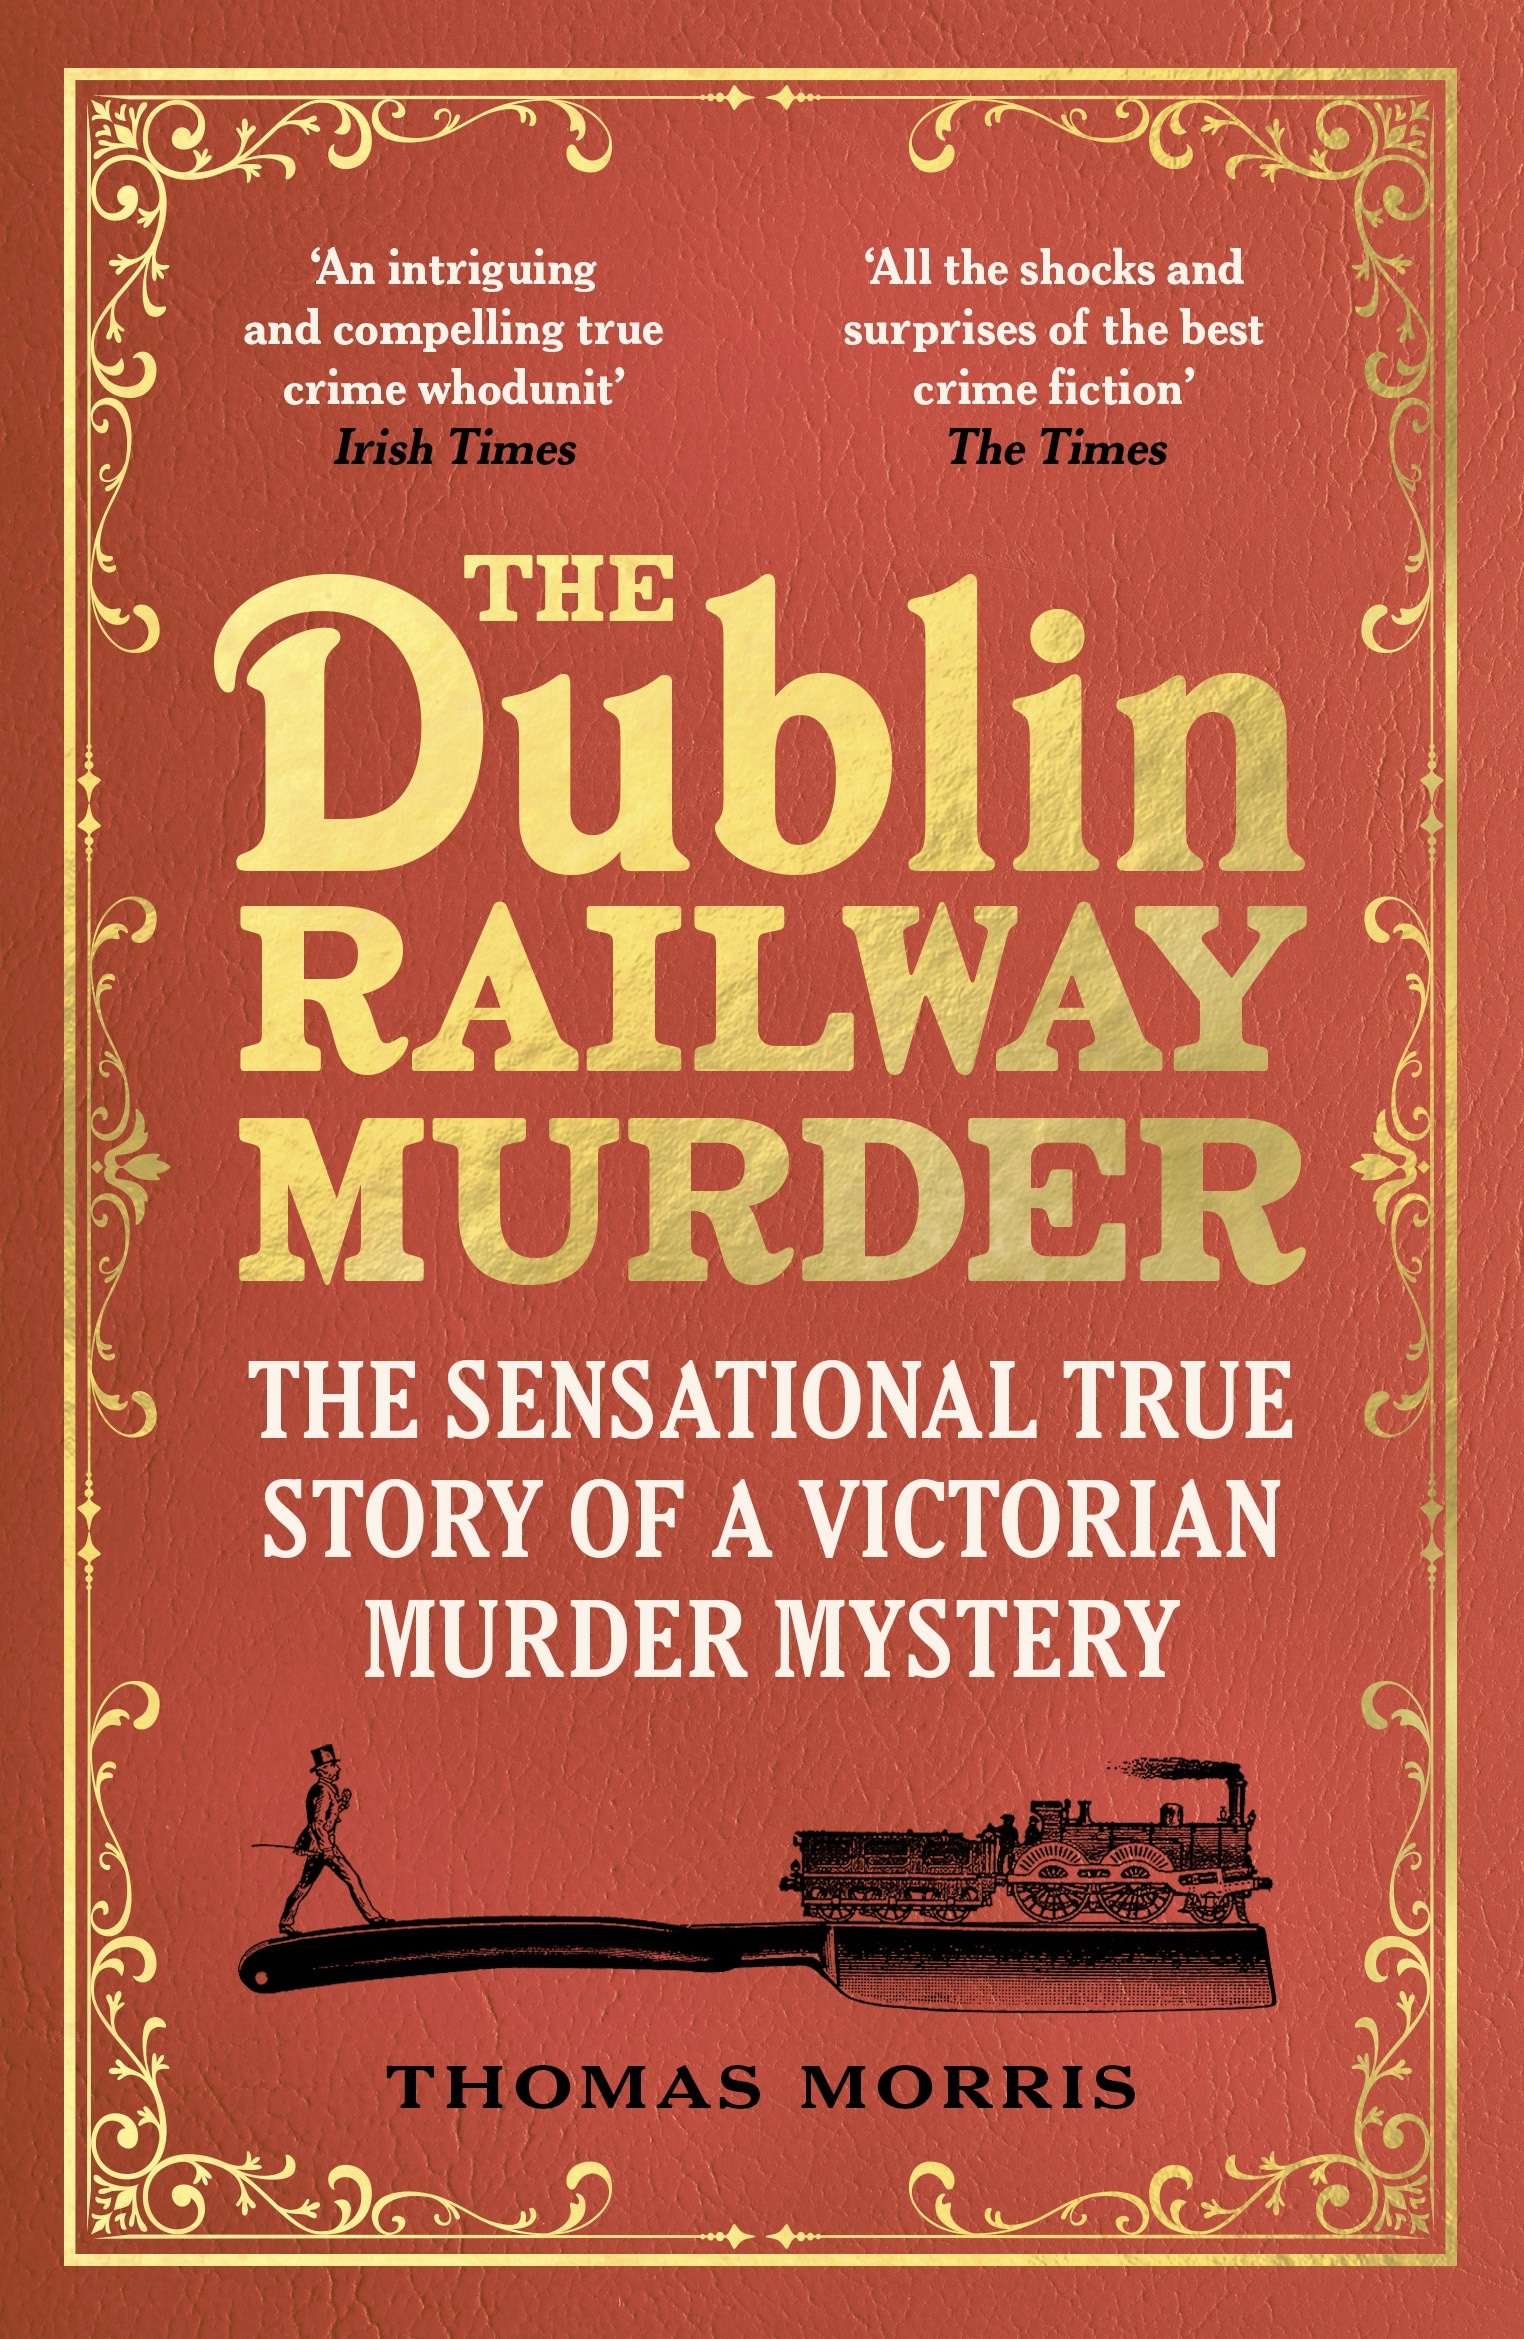 Book “The Dublin Railway Murder” by Thomas Morris — November 10, 2022